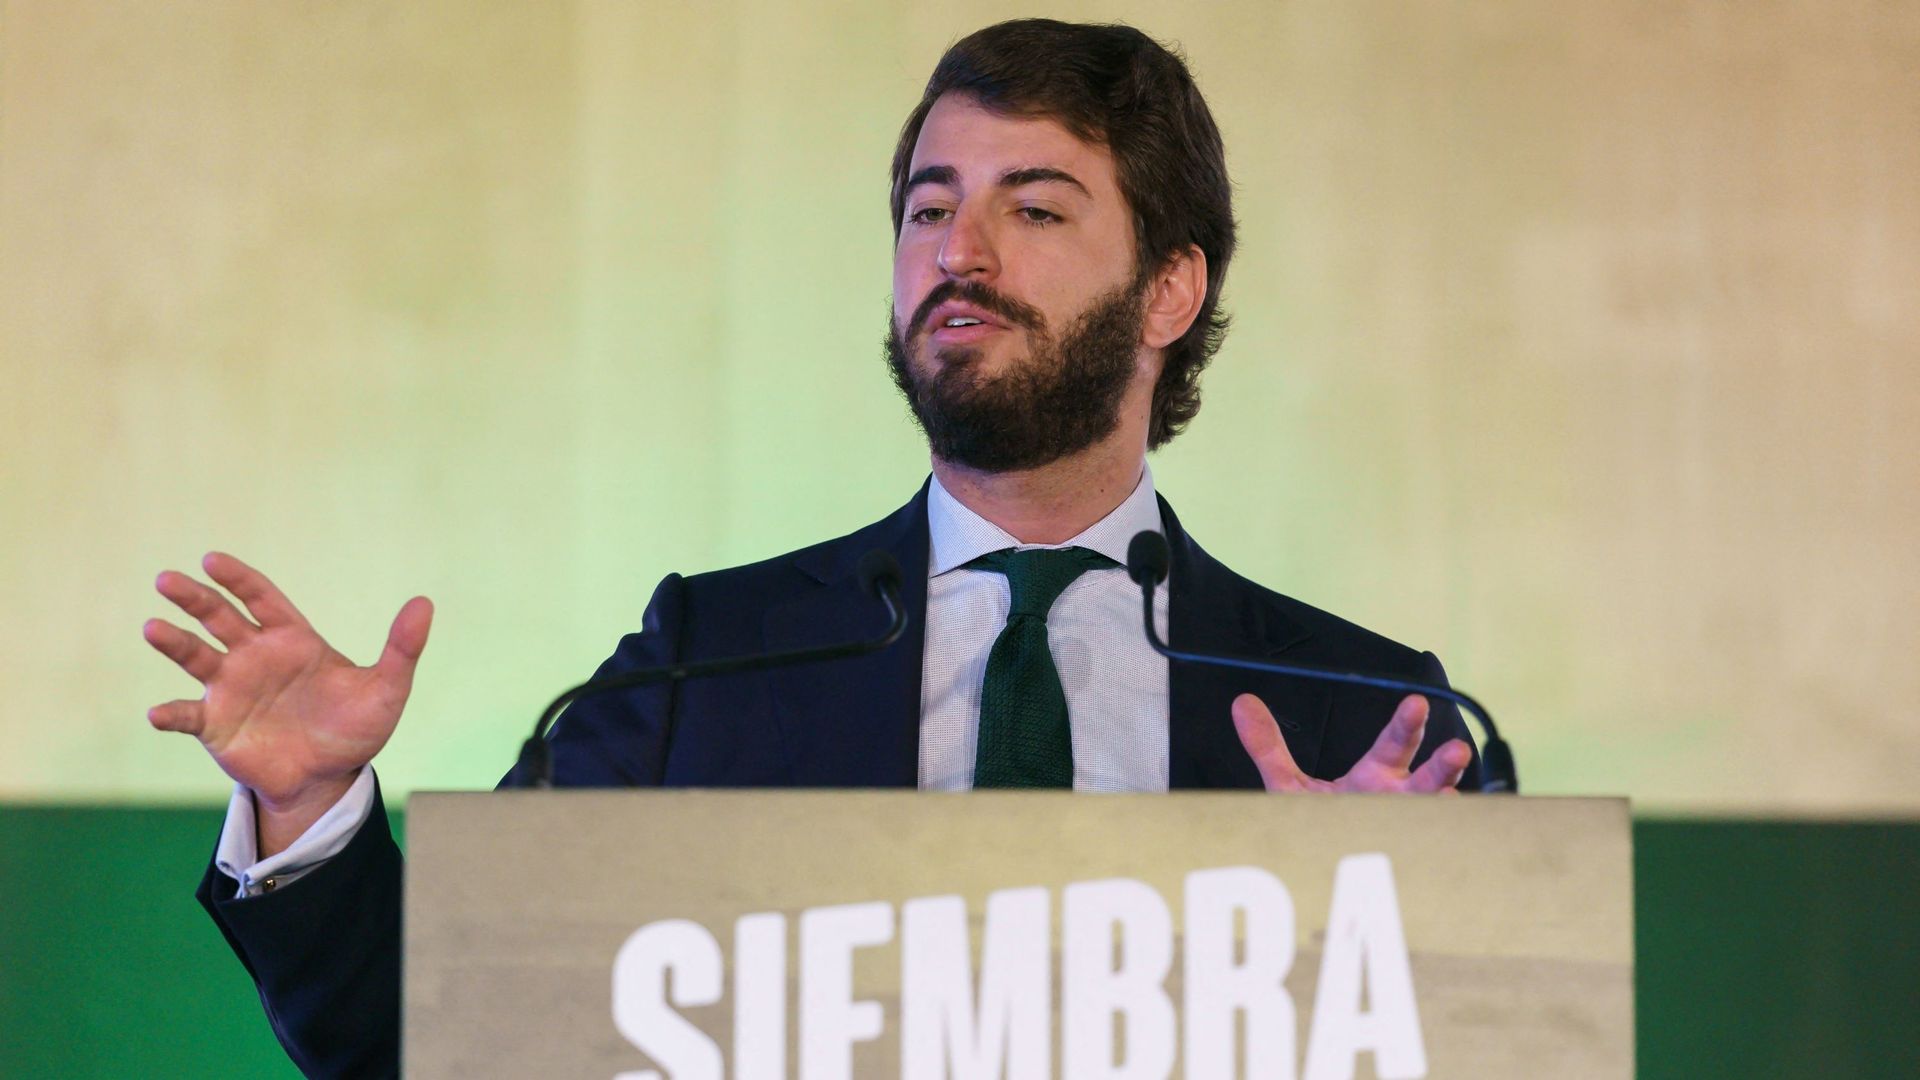 Juan Garcia Gallardo, le leader du parti d’extrême droite Vox, lors d’une conférence de presse à Valladolid, le 14 février 2022.